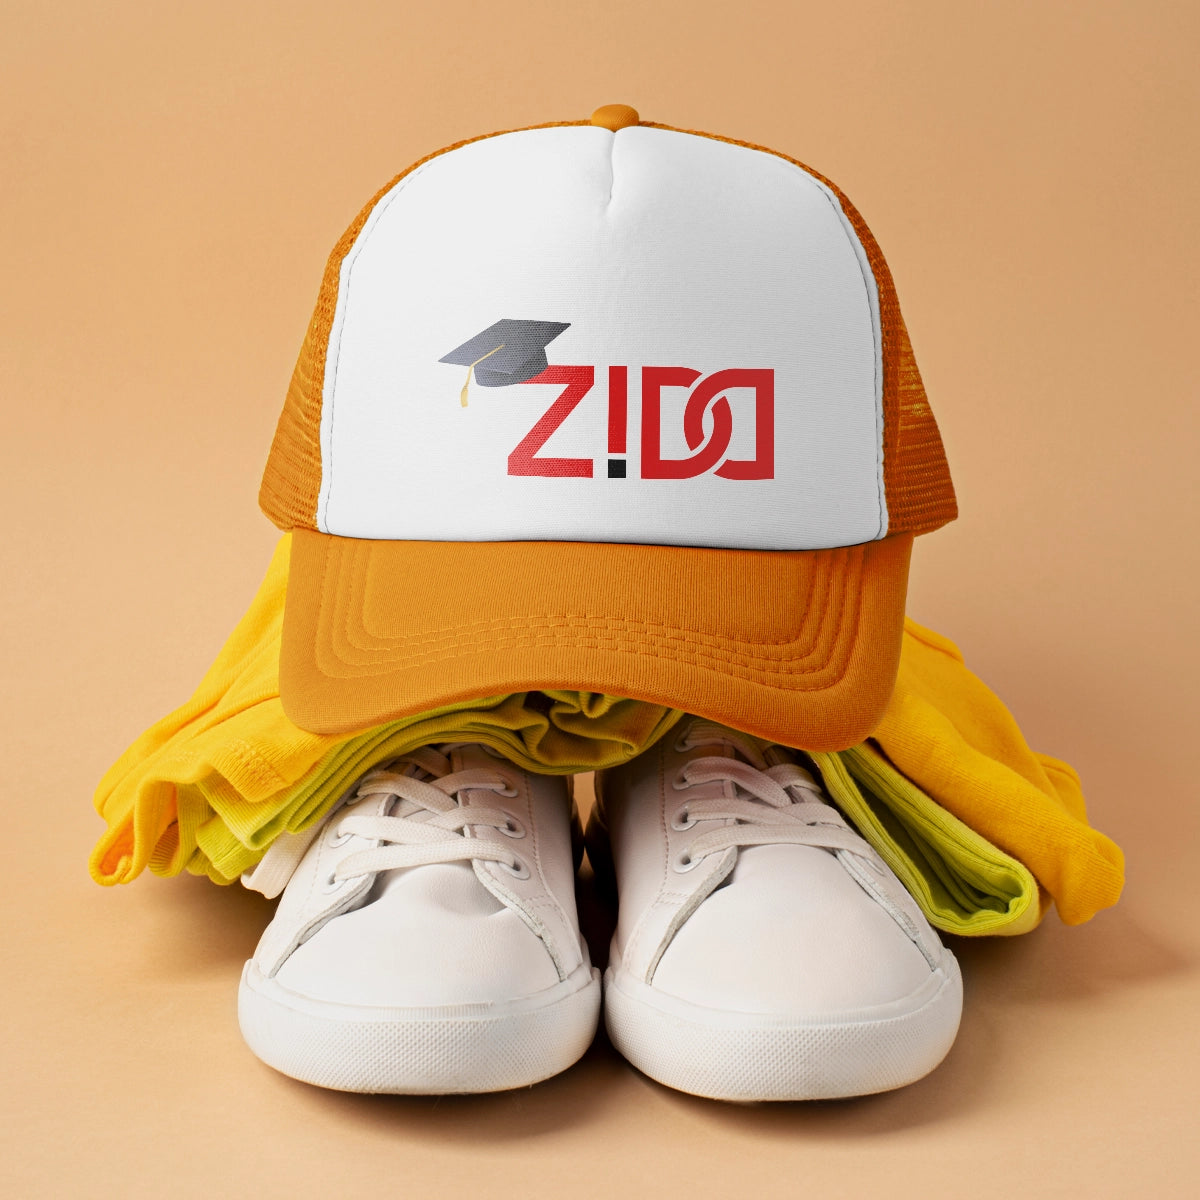 zidd.com